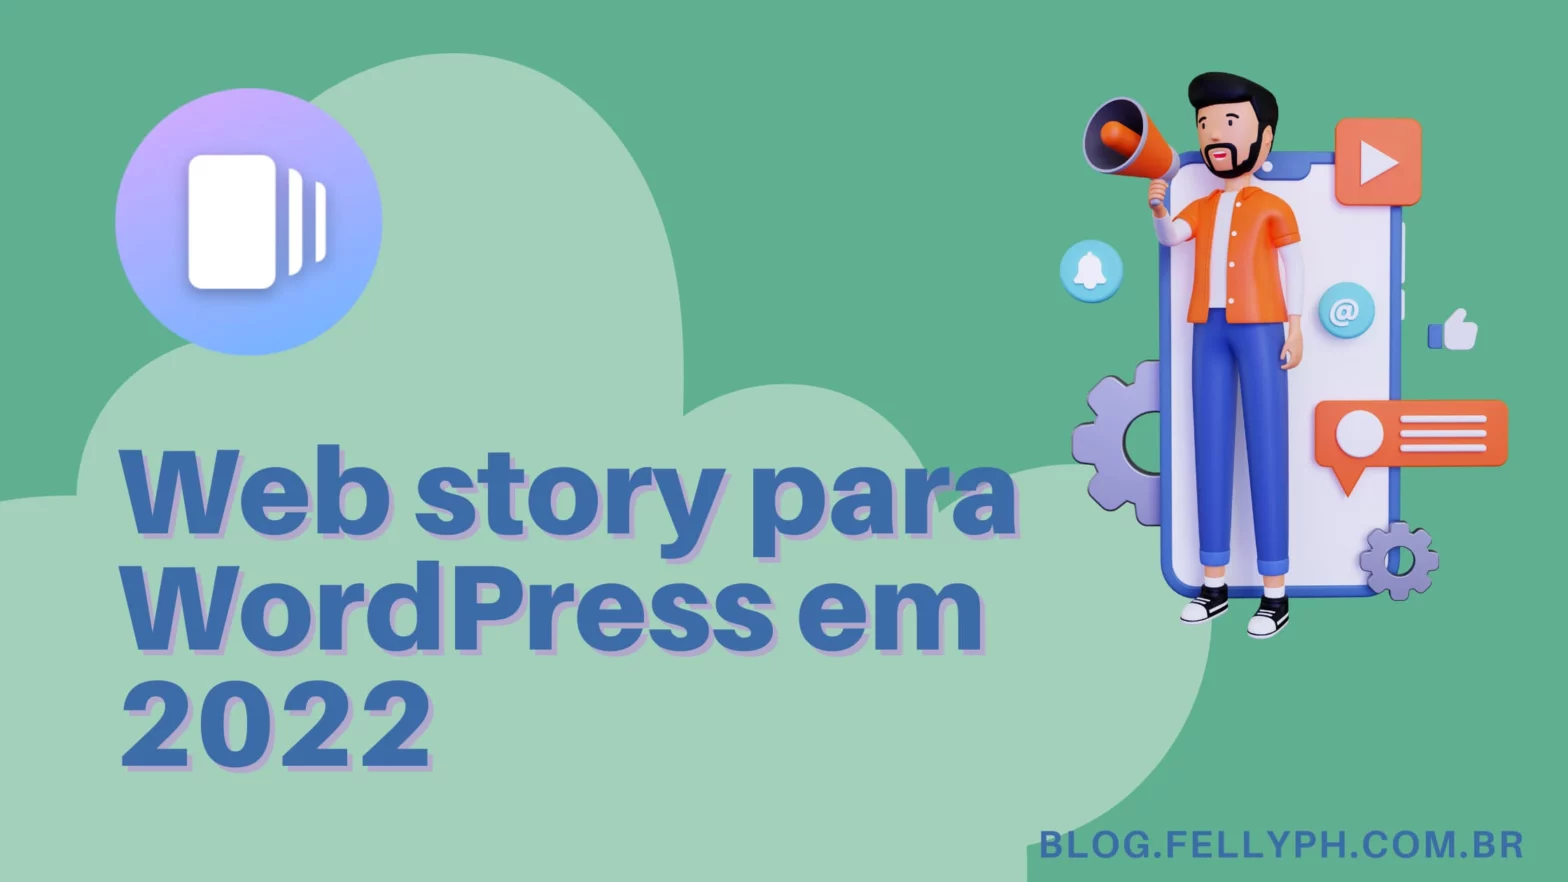 Blog fellyph cintra - Plugin de web story para WordPress em 2022